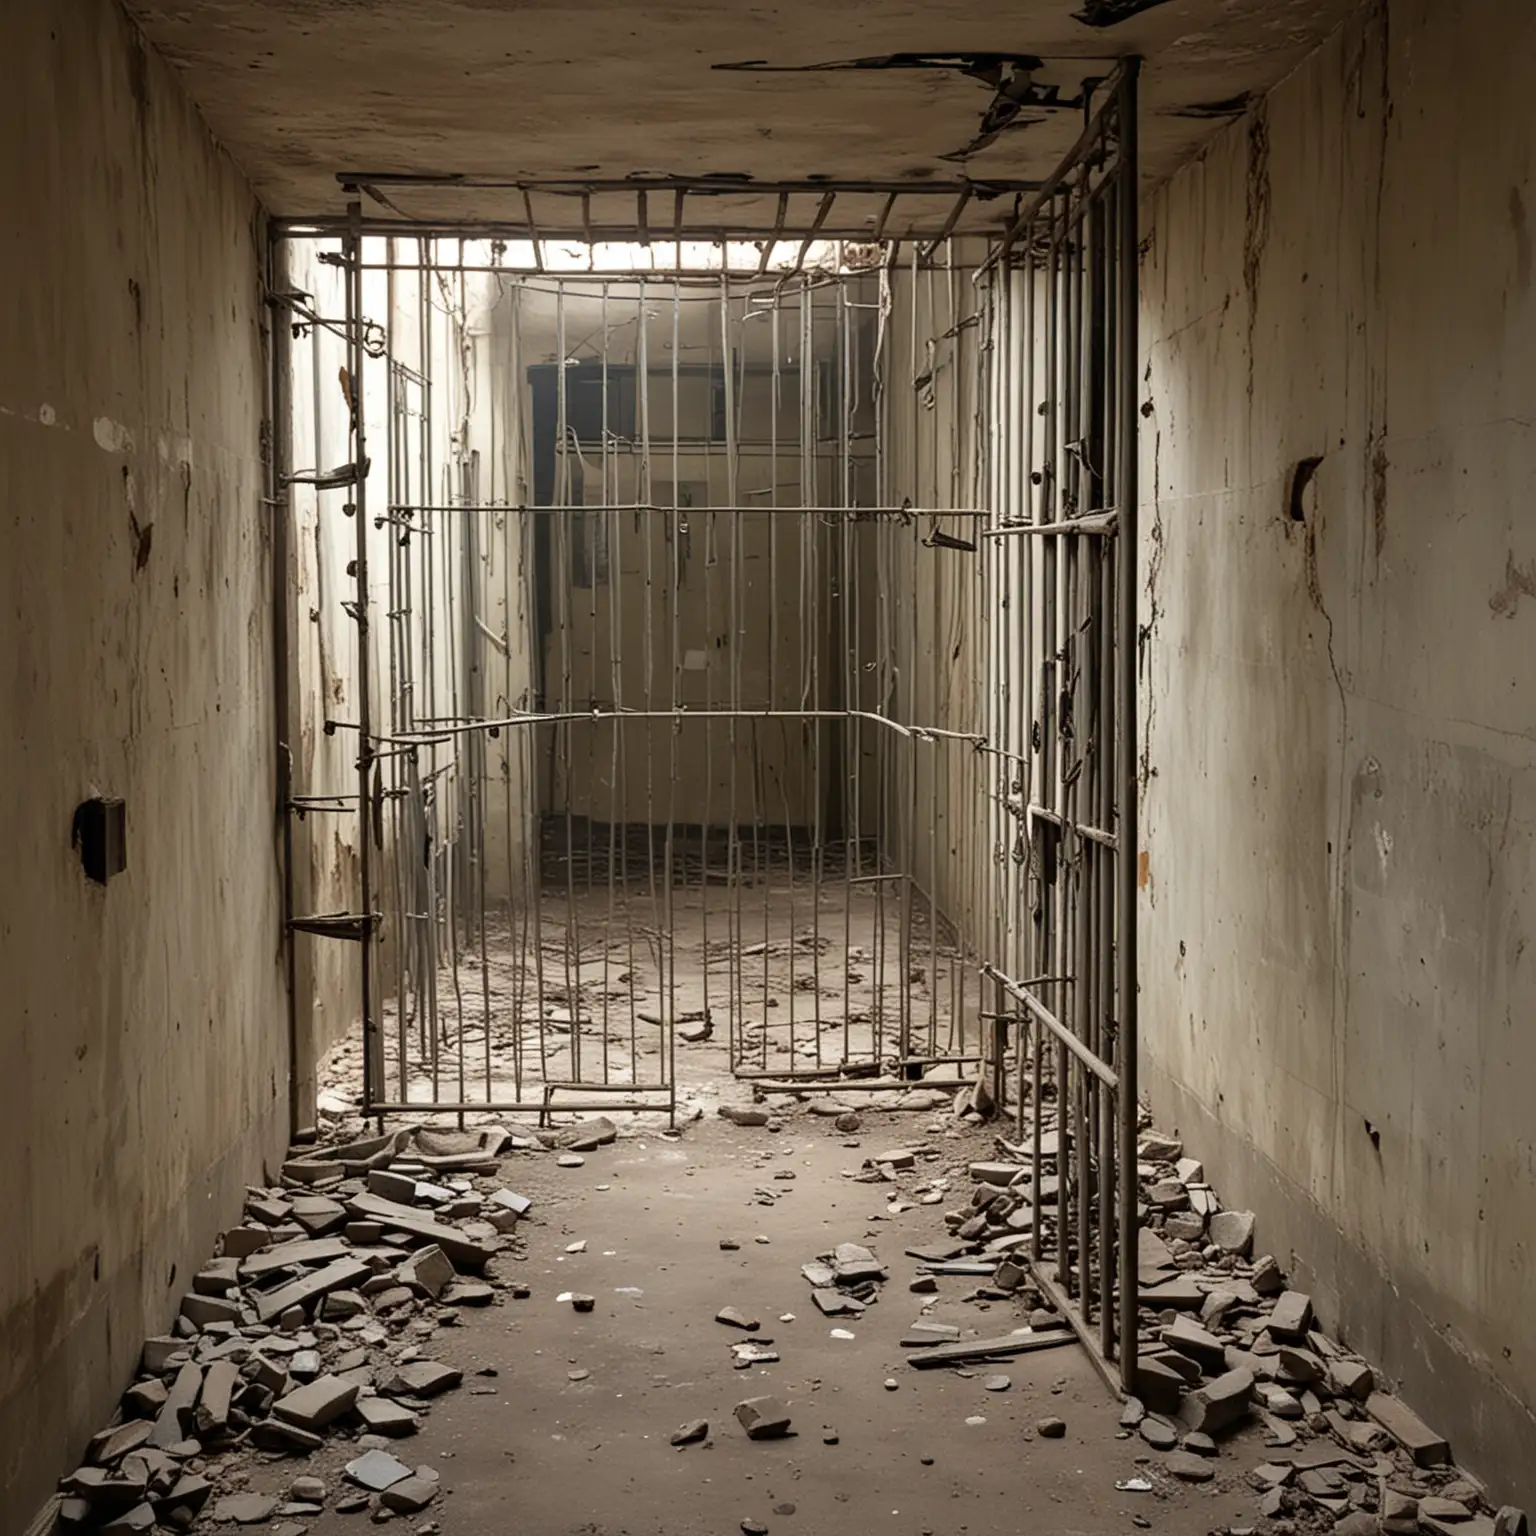 Broken Steel Bars in a Prison Cell